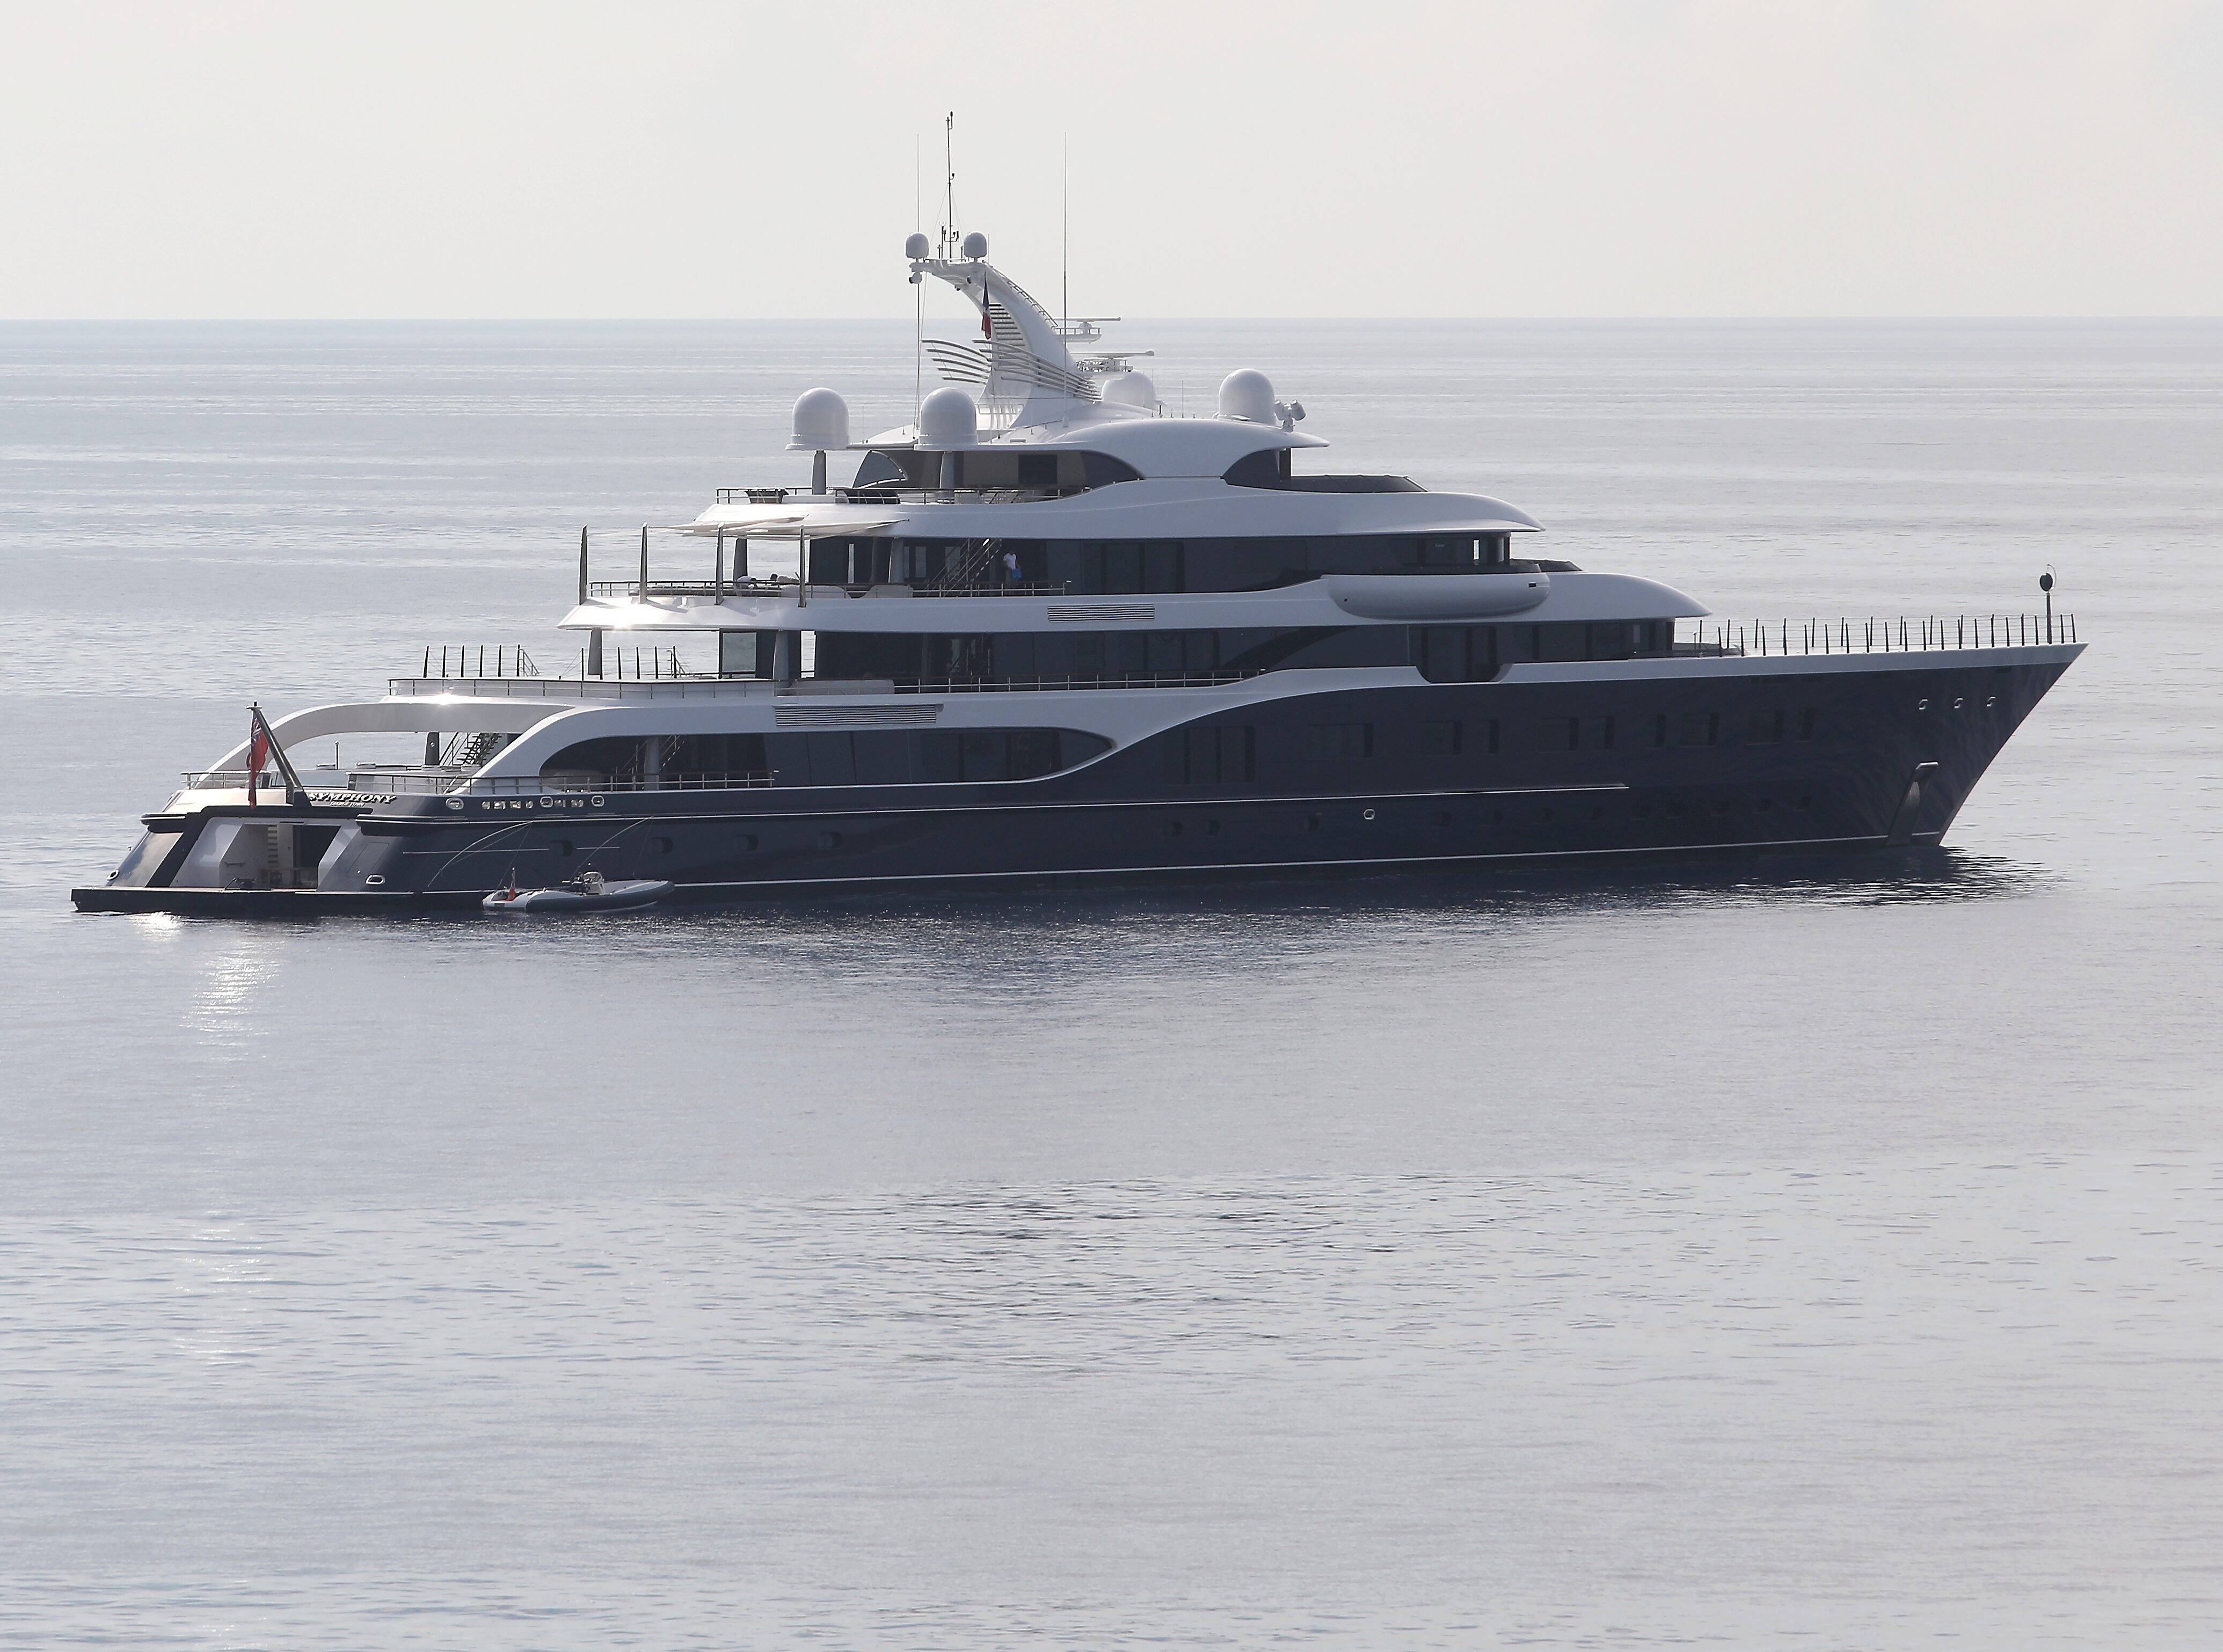 Le yacht fantôme de Bernard Arnault repéré sur la Côte d'Azur - Nice-Matin